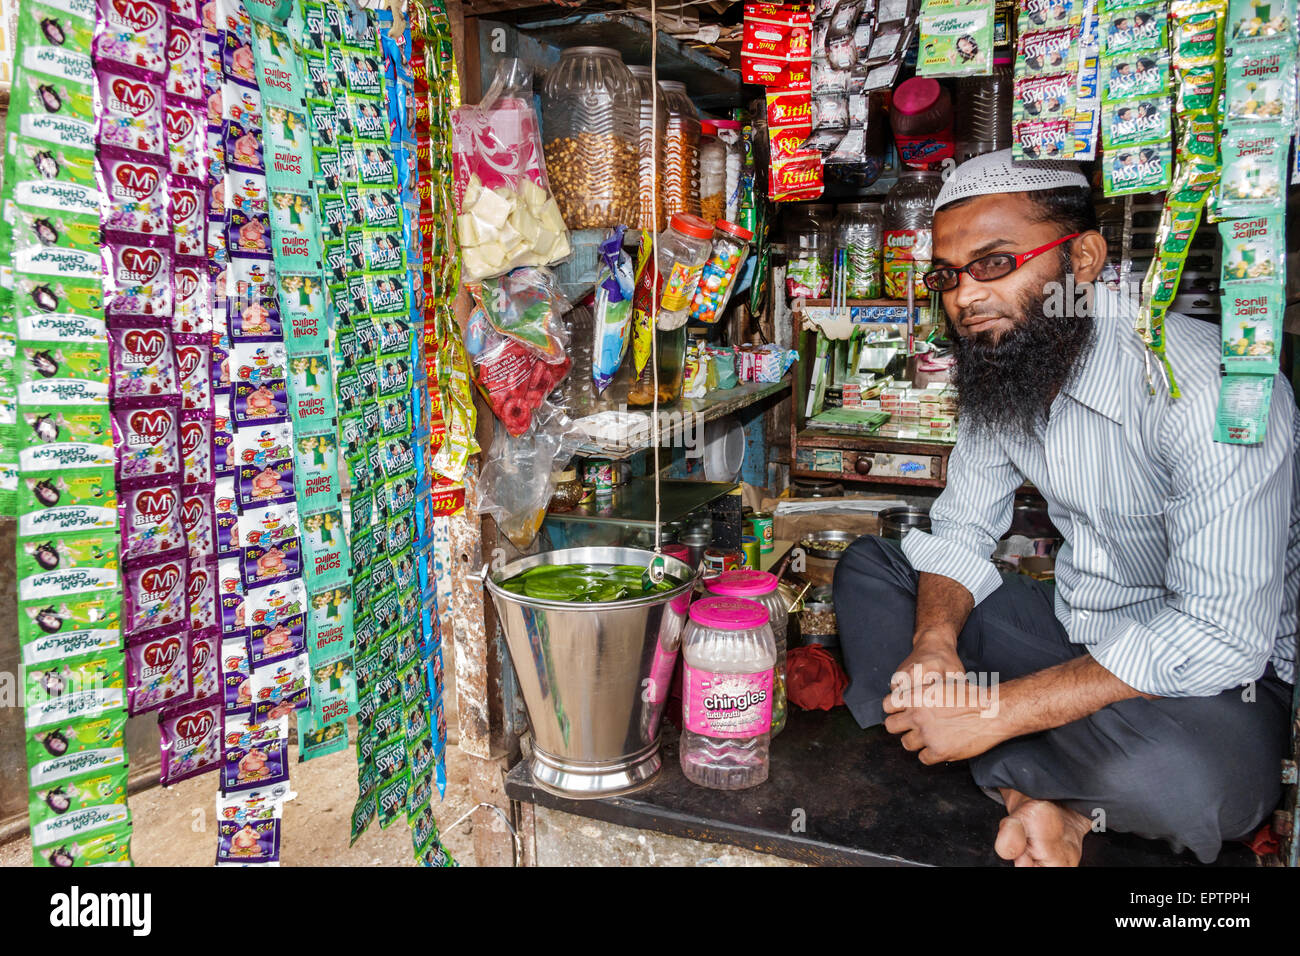 Mumbai Inde,Dharavi,60 Feet Road,bidonville,faible revenu,pauvre,pauvreté,homme hommes,musulman,dépanneur,stall,propriétaire,lotions,paquets,India15228084 Banque D'Images